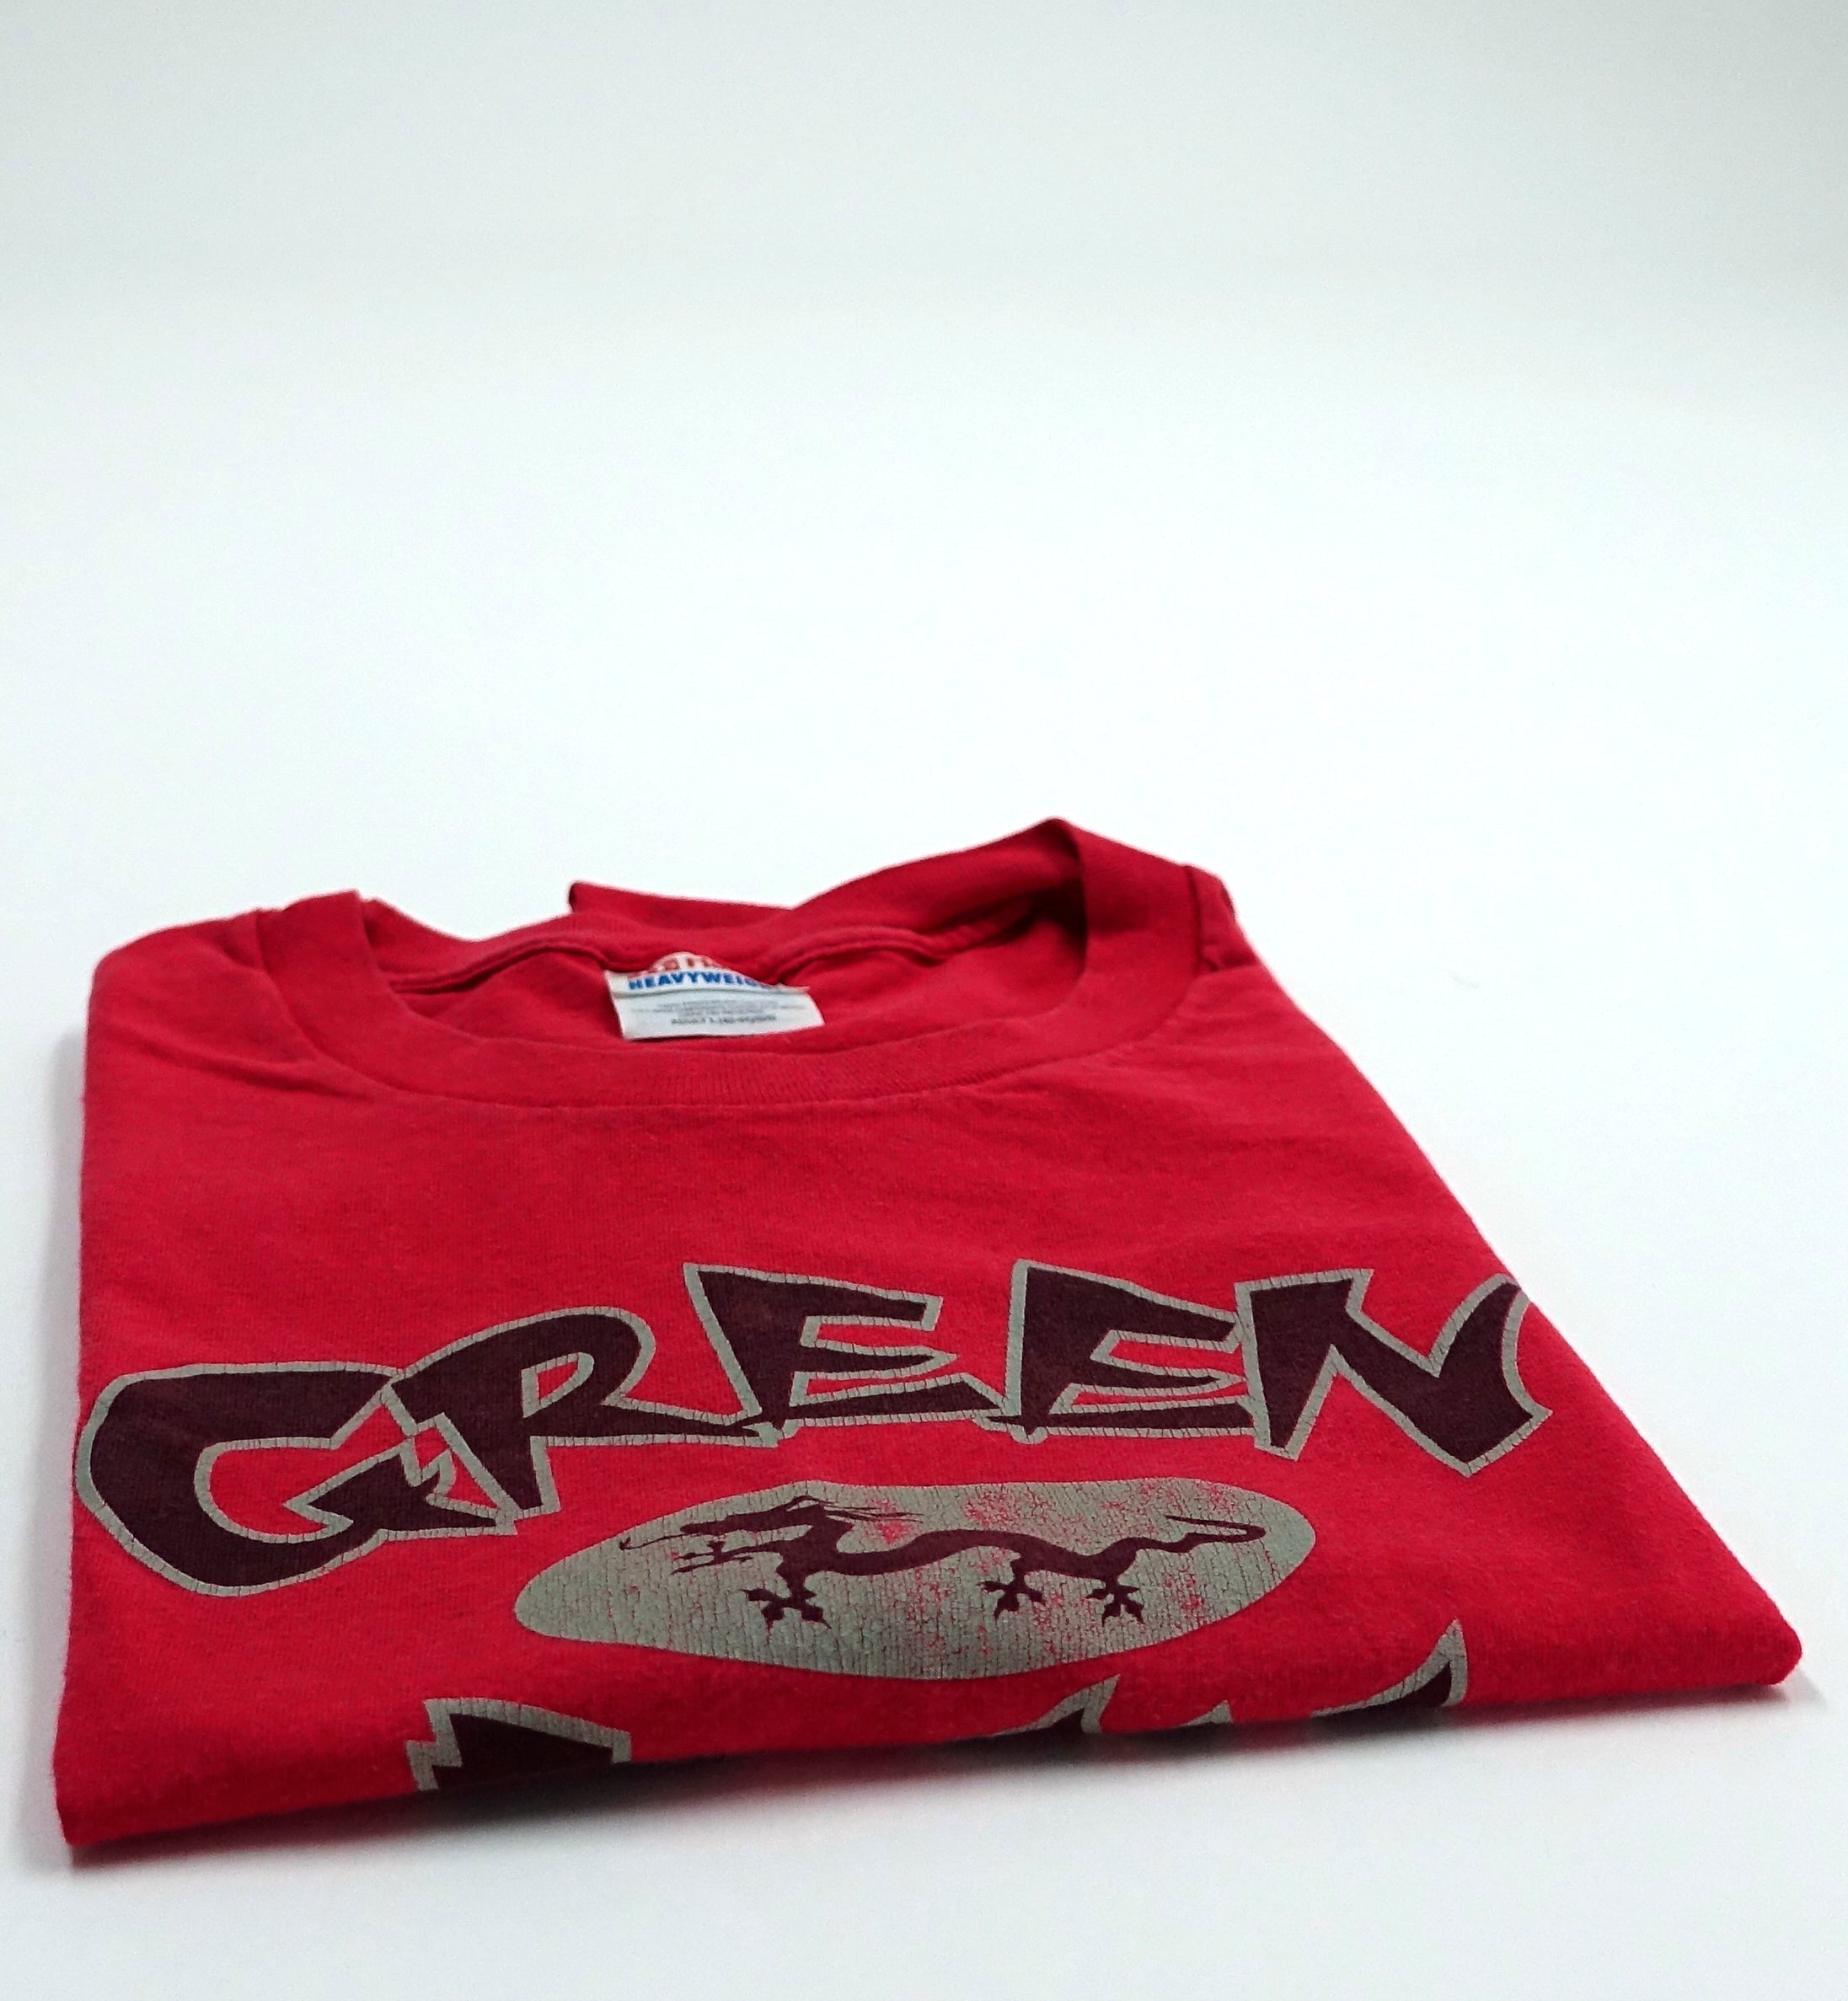 Green Day - Warning Asian Theme Dragon 2000 Tour Shirt Size Large